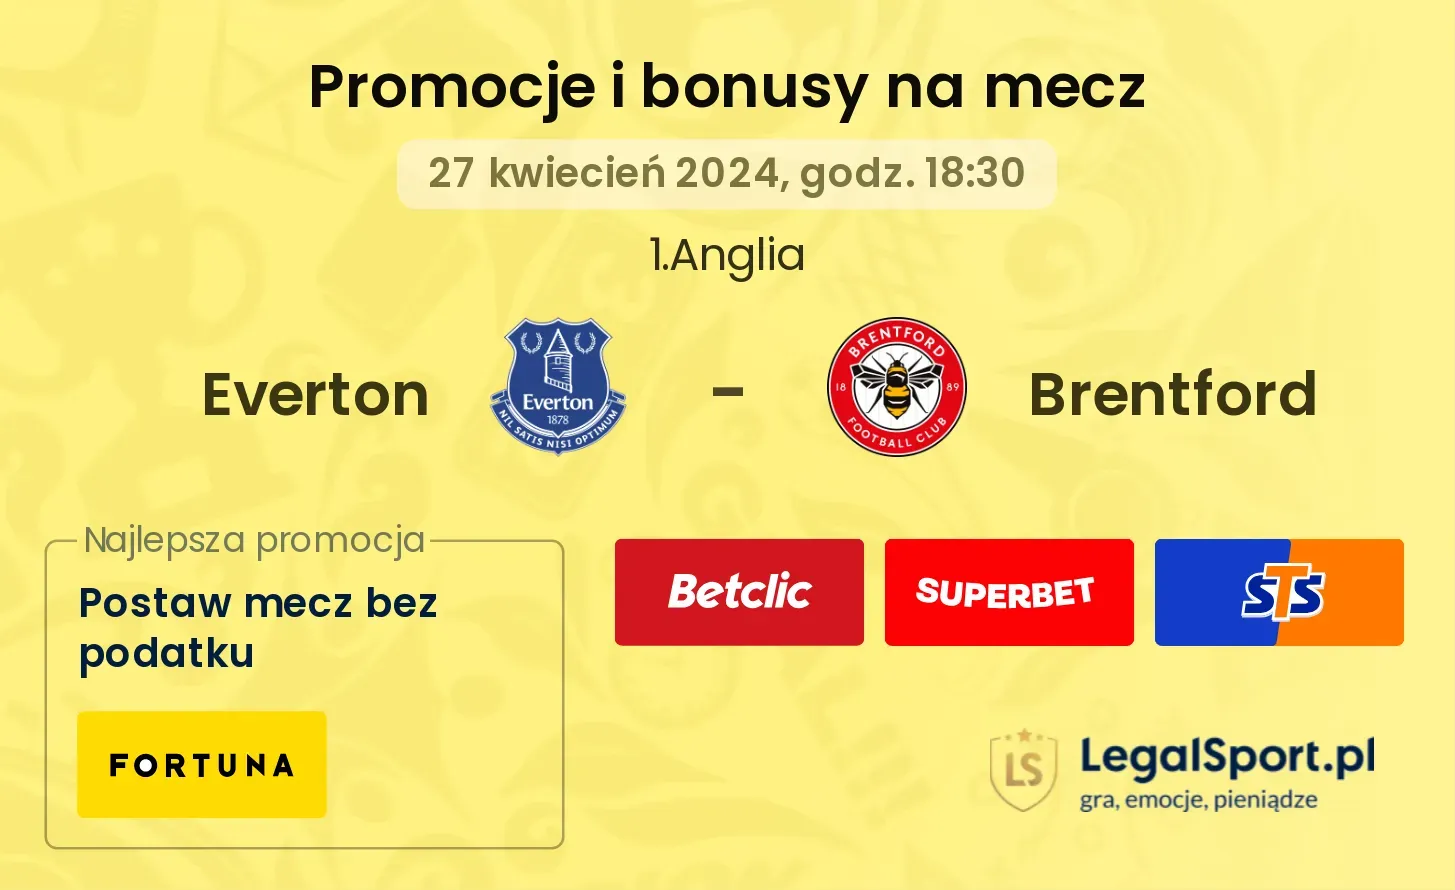 Everton - Brentford promocje i bonusy (27.04, 18:30)